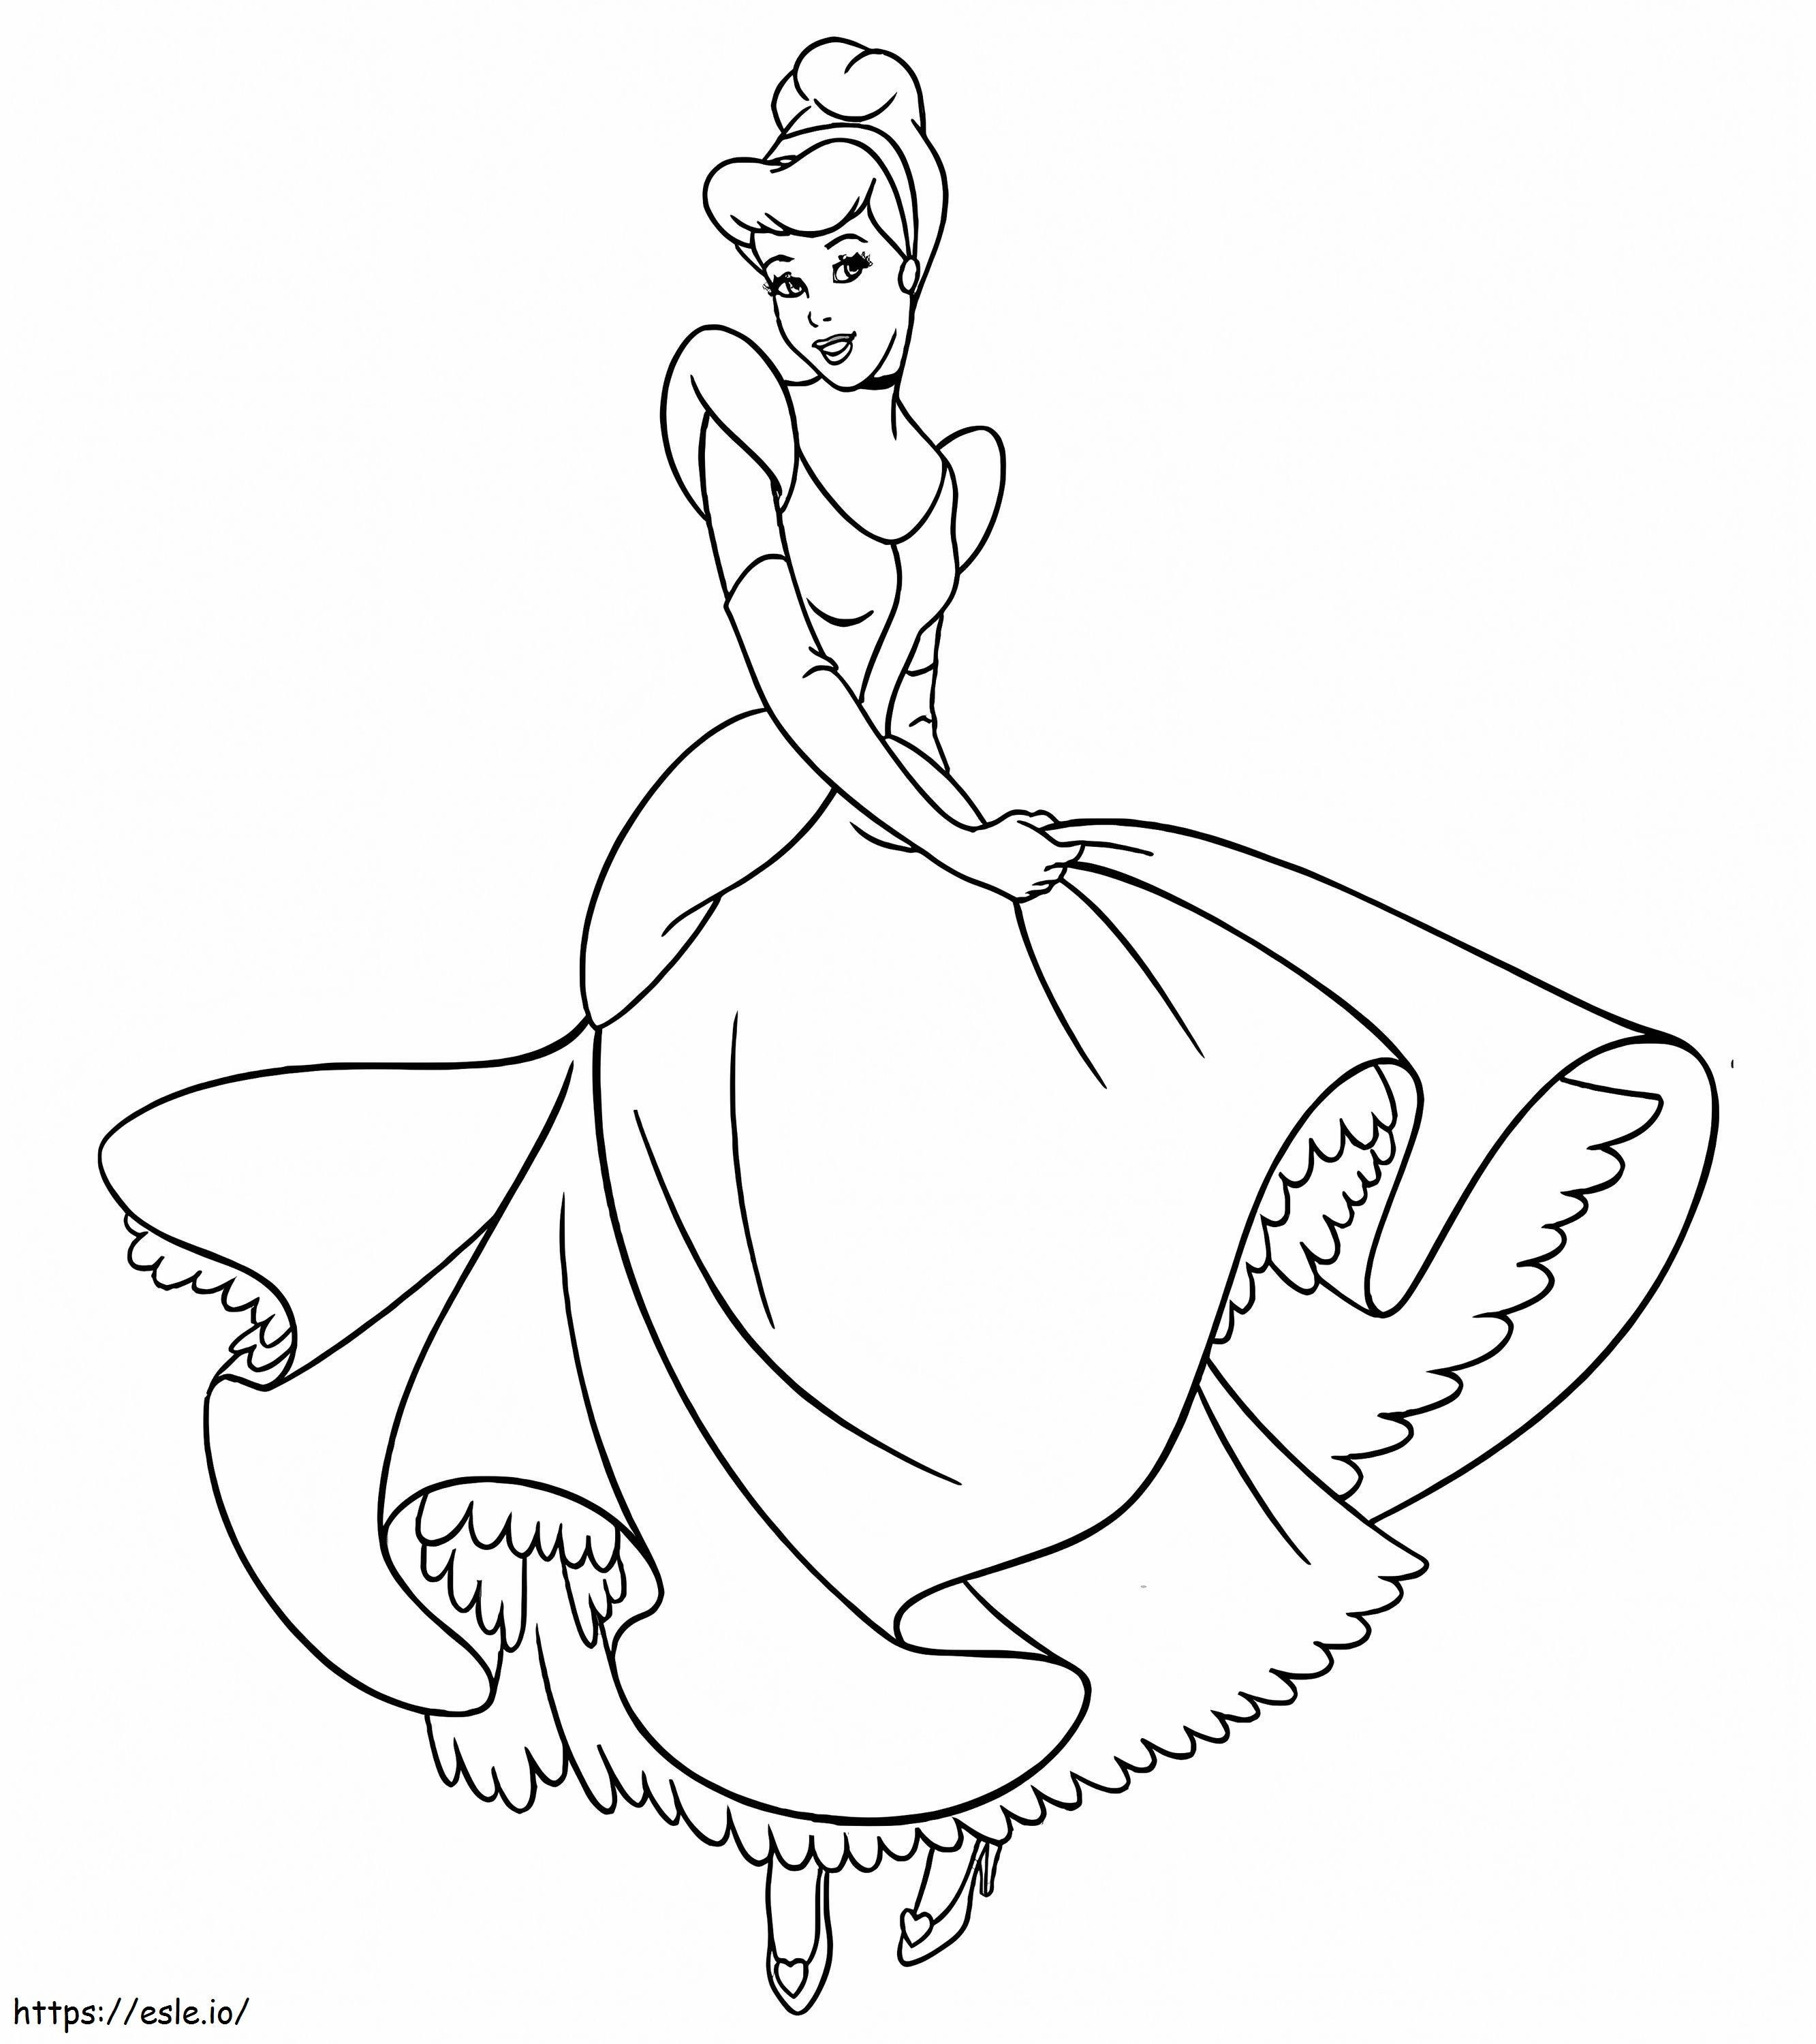 Funny Cinderella coloring page